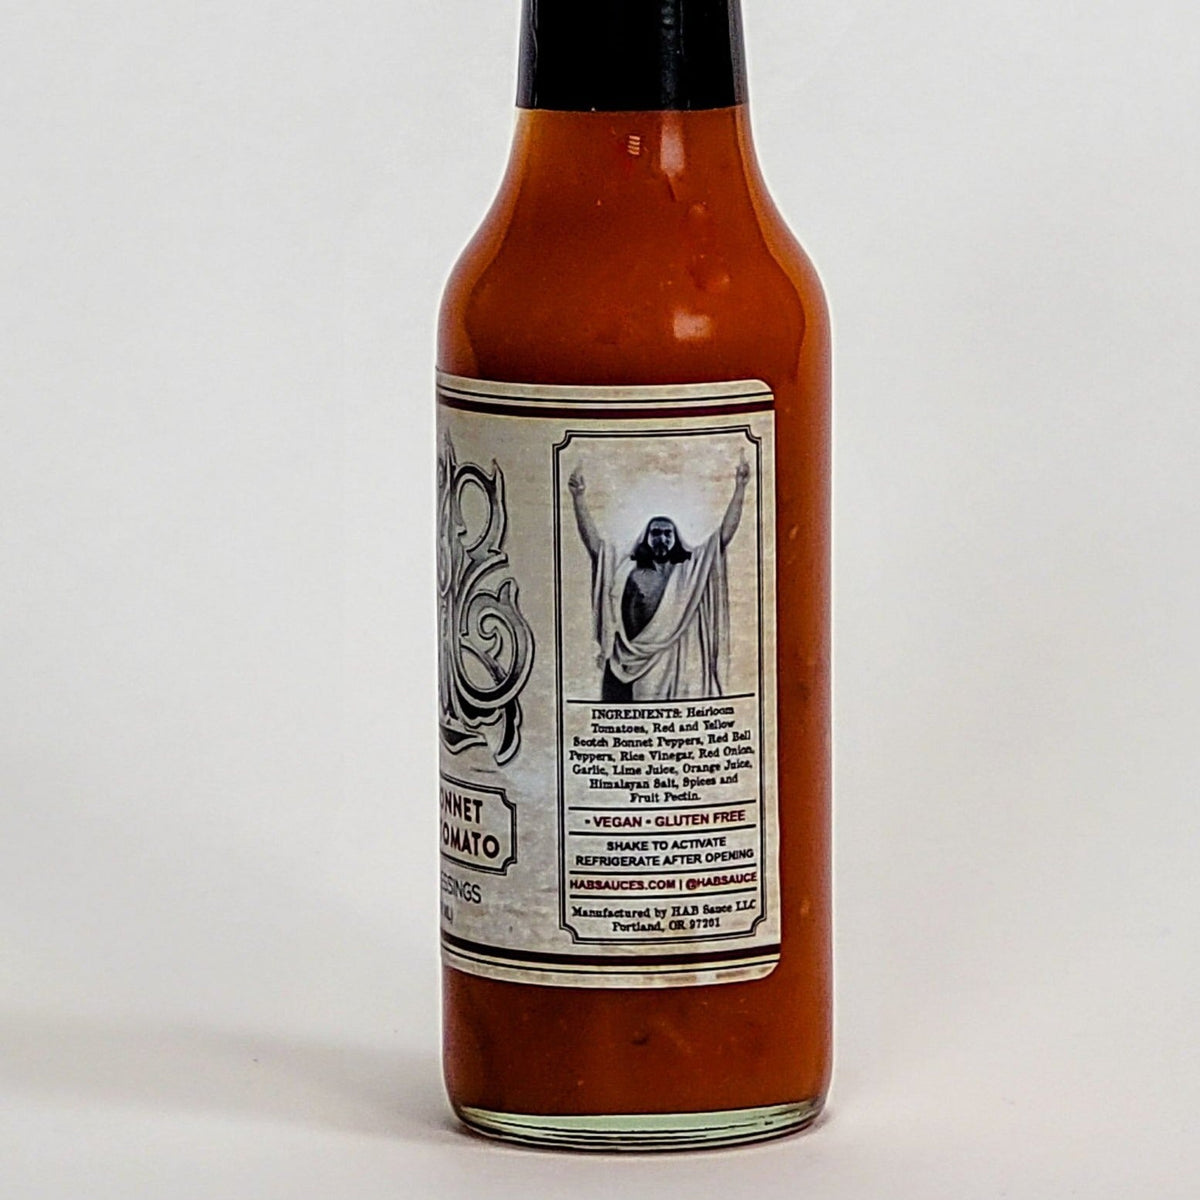 hab sauce scotch bonnet heirloom tomato hot sauce label description